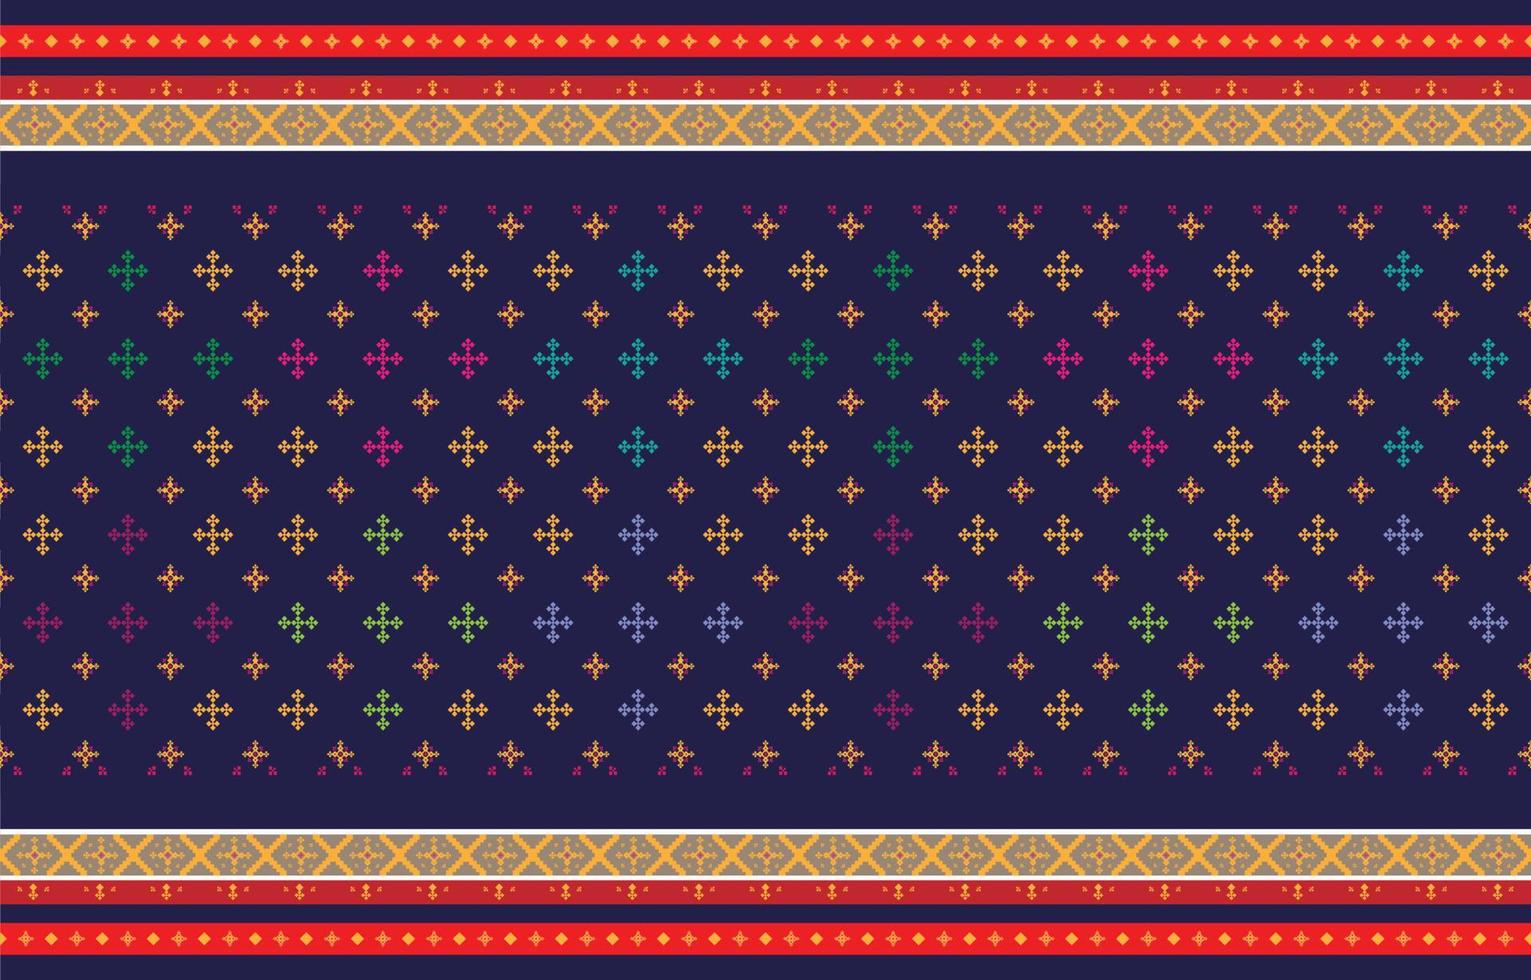 motivi geometrici e tribali astratti, modelli di tessuti locali di design d'uso e design ispirato alle tribù indigene. illustrazione vettoriale geometrica